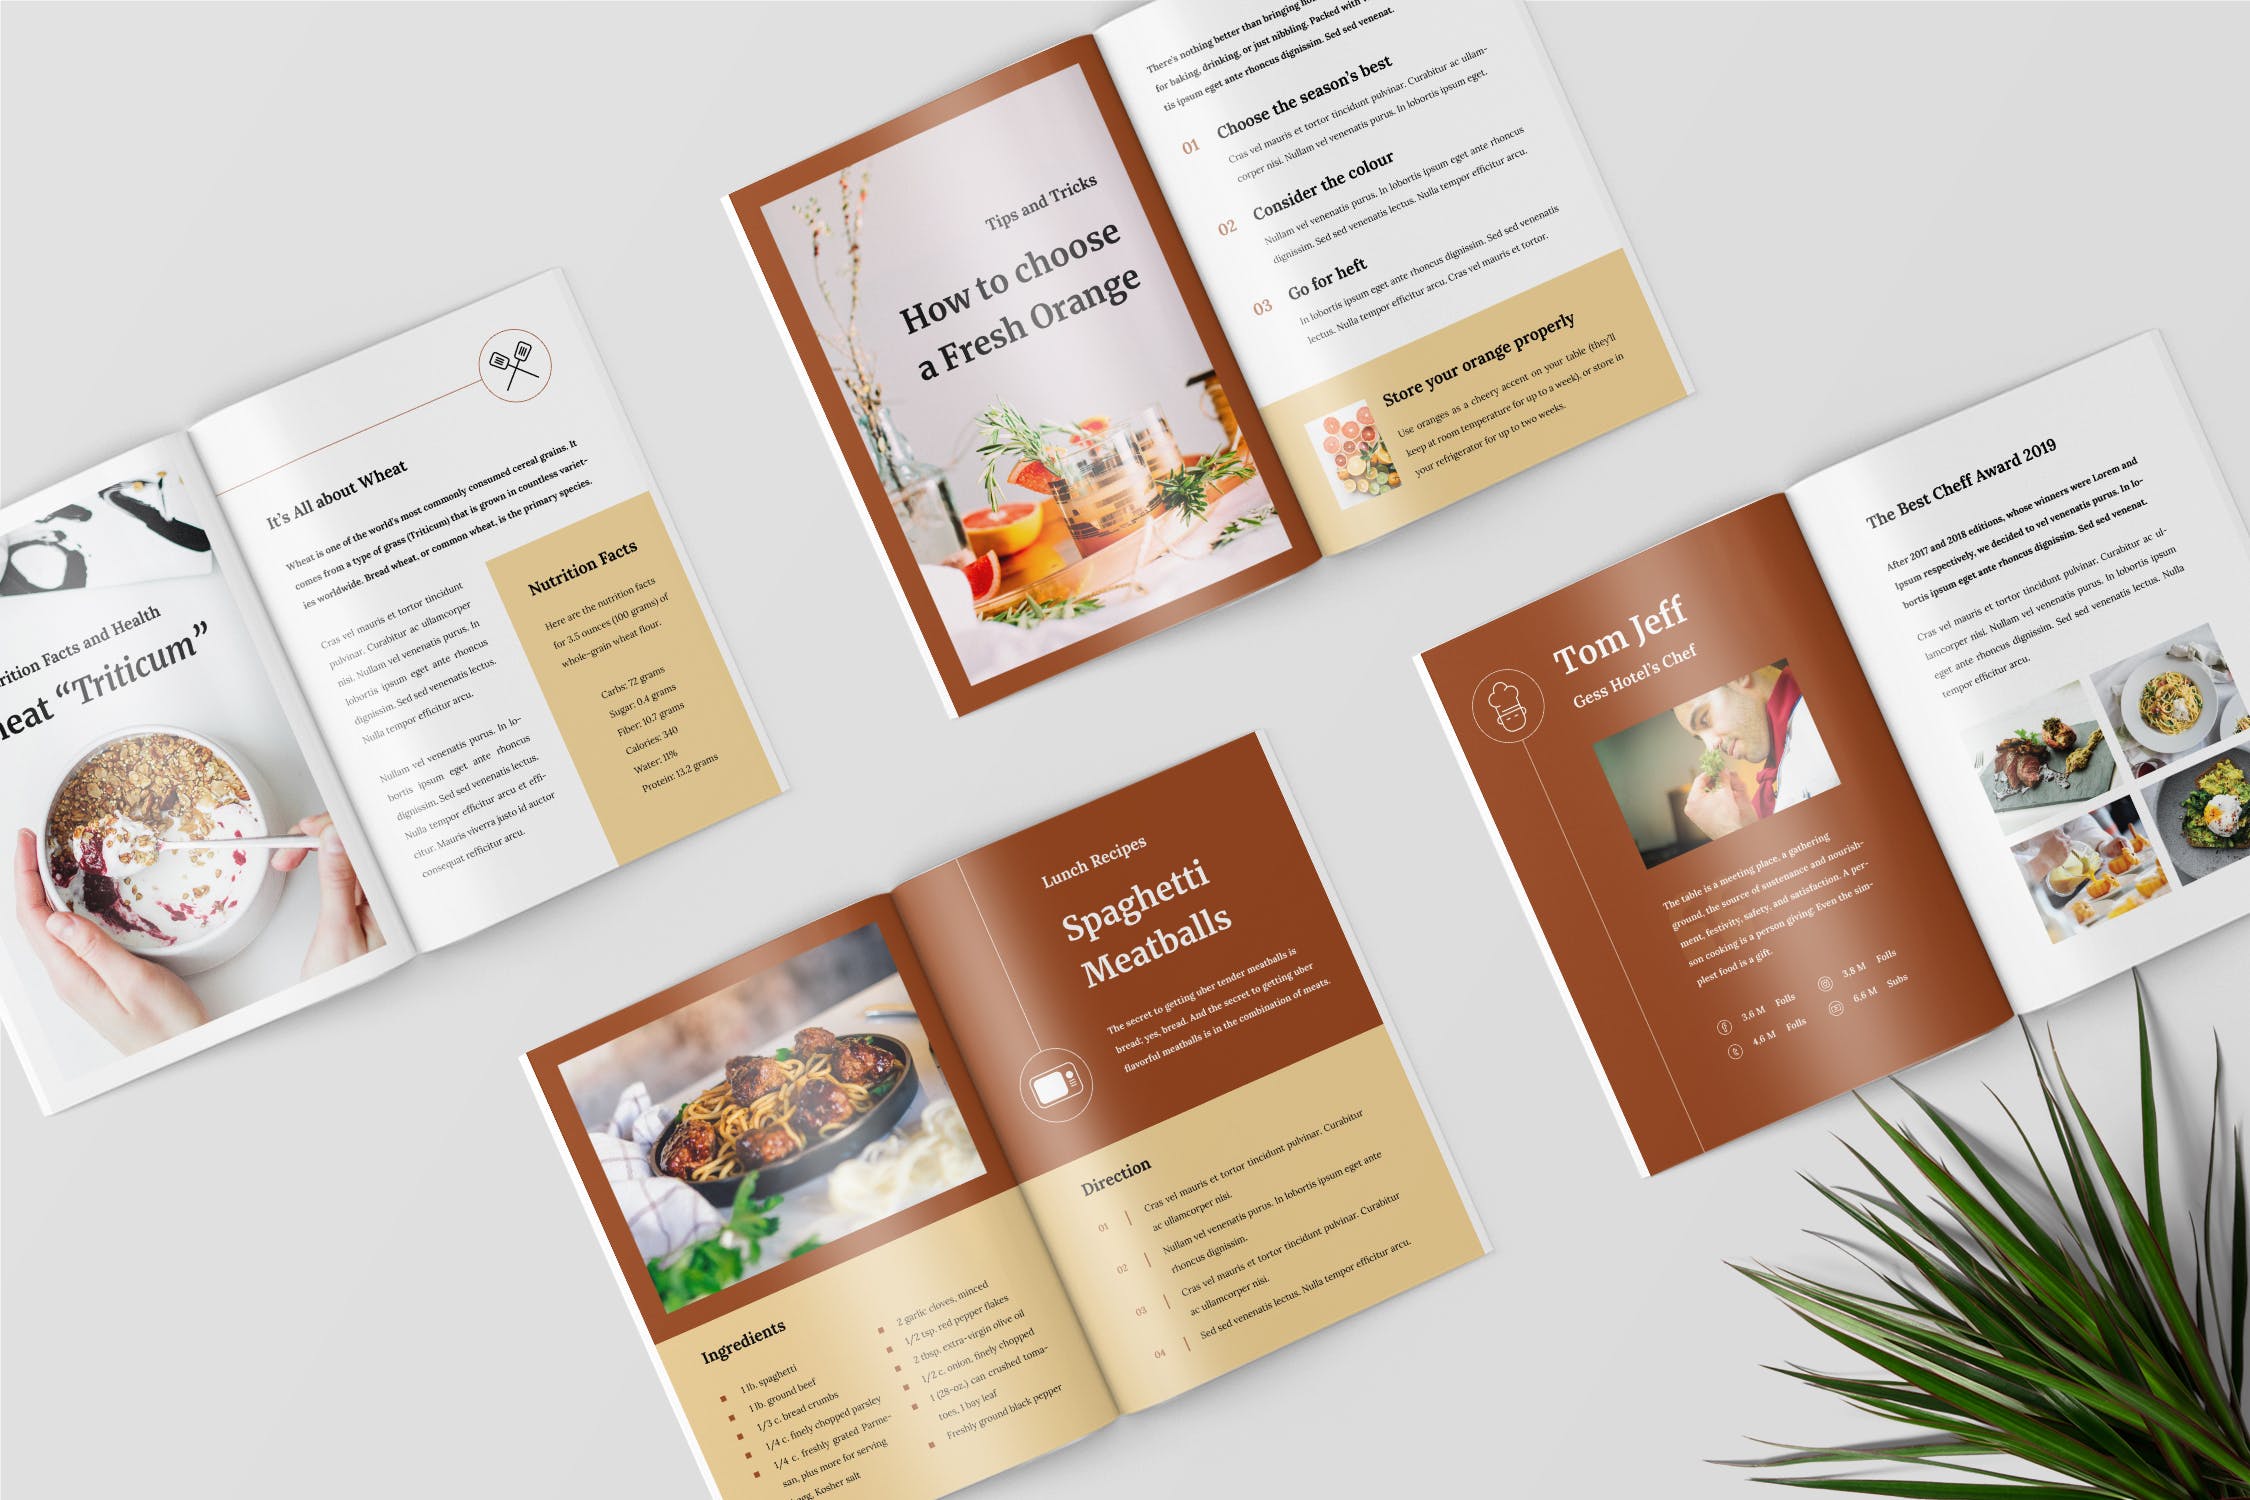 食谱美食主题杂志排版设计制作模板 Recipe Magazine Template插图1